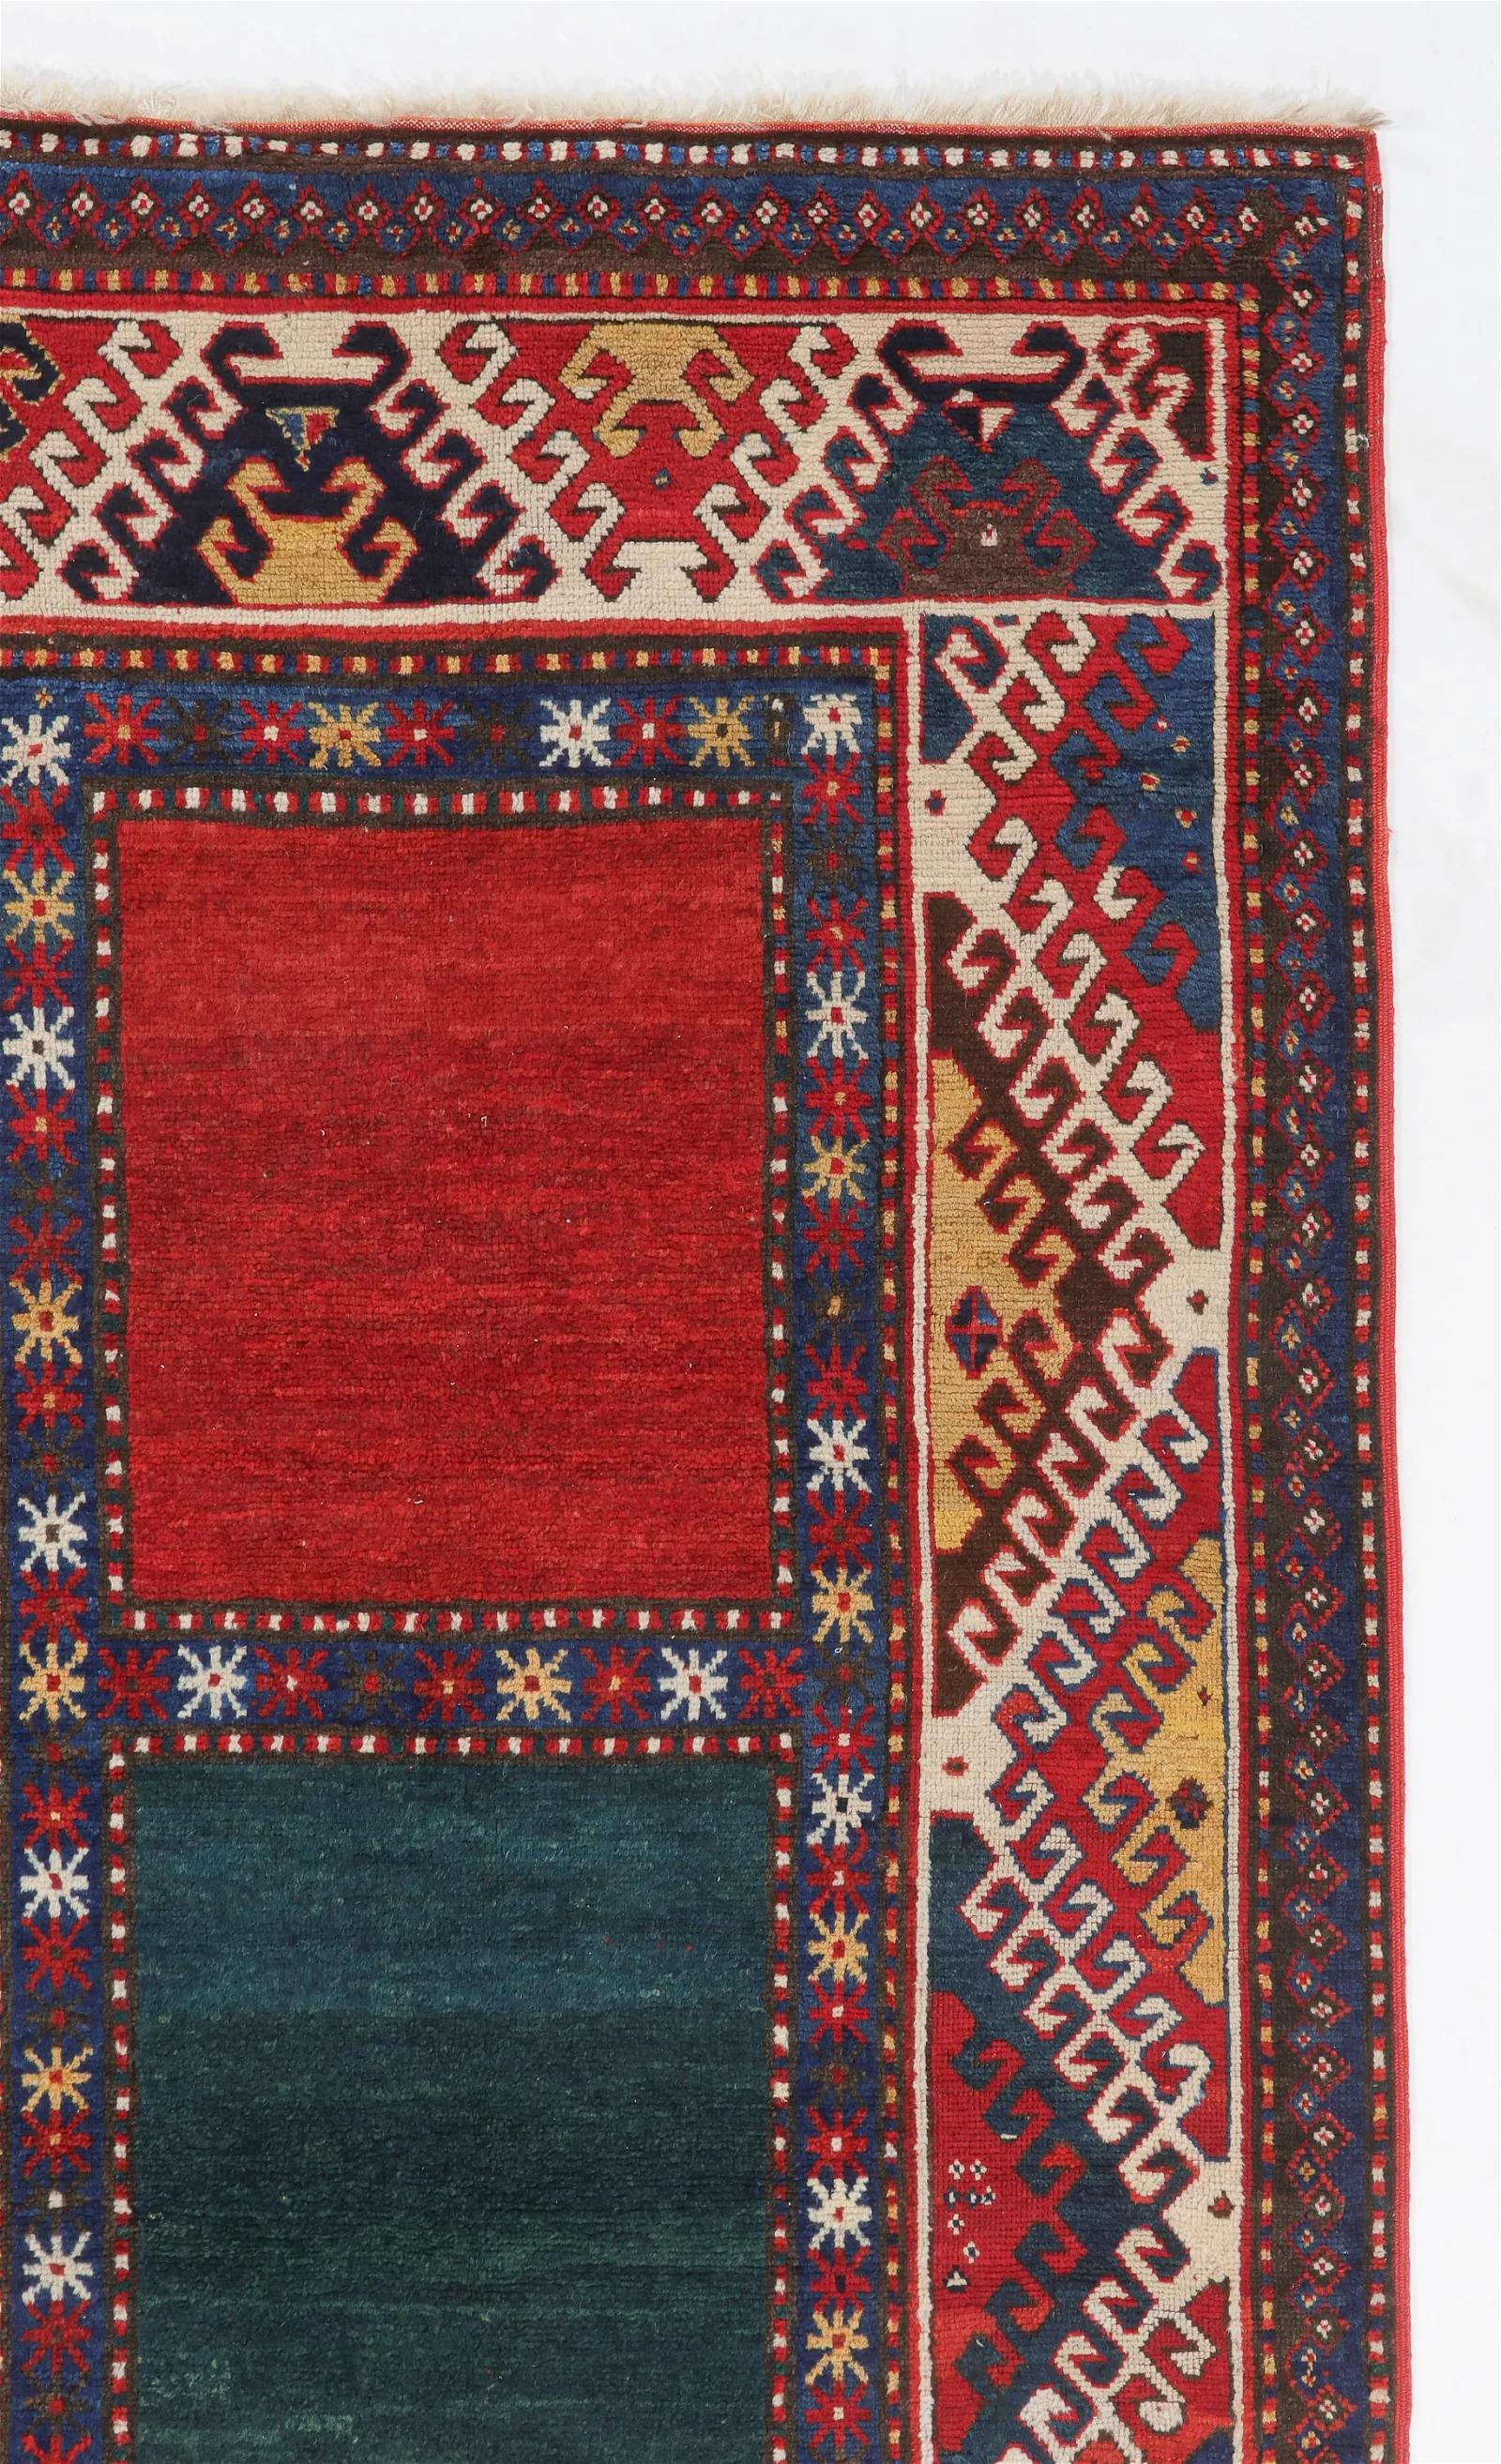 Découvrez le charme de l'artisanat du Caucase avec ce tapis Borjalu Kazak Vintage datant du début ou du milieu du 20e siècle. Mesurant 4 pieds 3 pouces de largeur et 8 pieds 11 pouces de longueur (130 x 272 cm), ce tapis captivant témoigne du riche